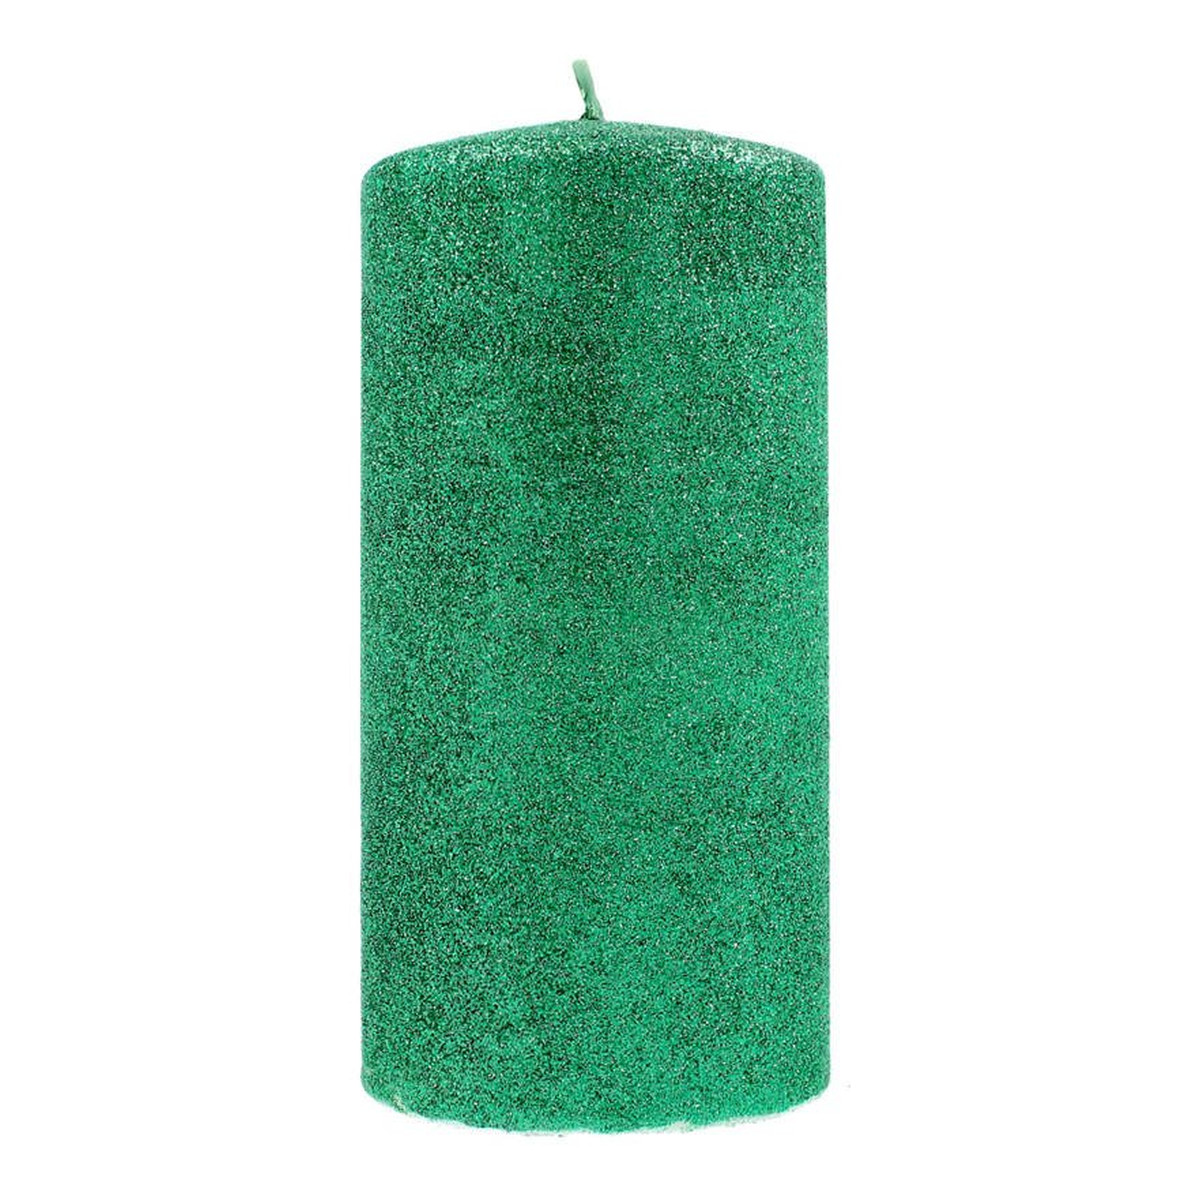 Artman Candles Świeca ozdobna Glamour zielona - walec mały